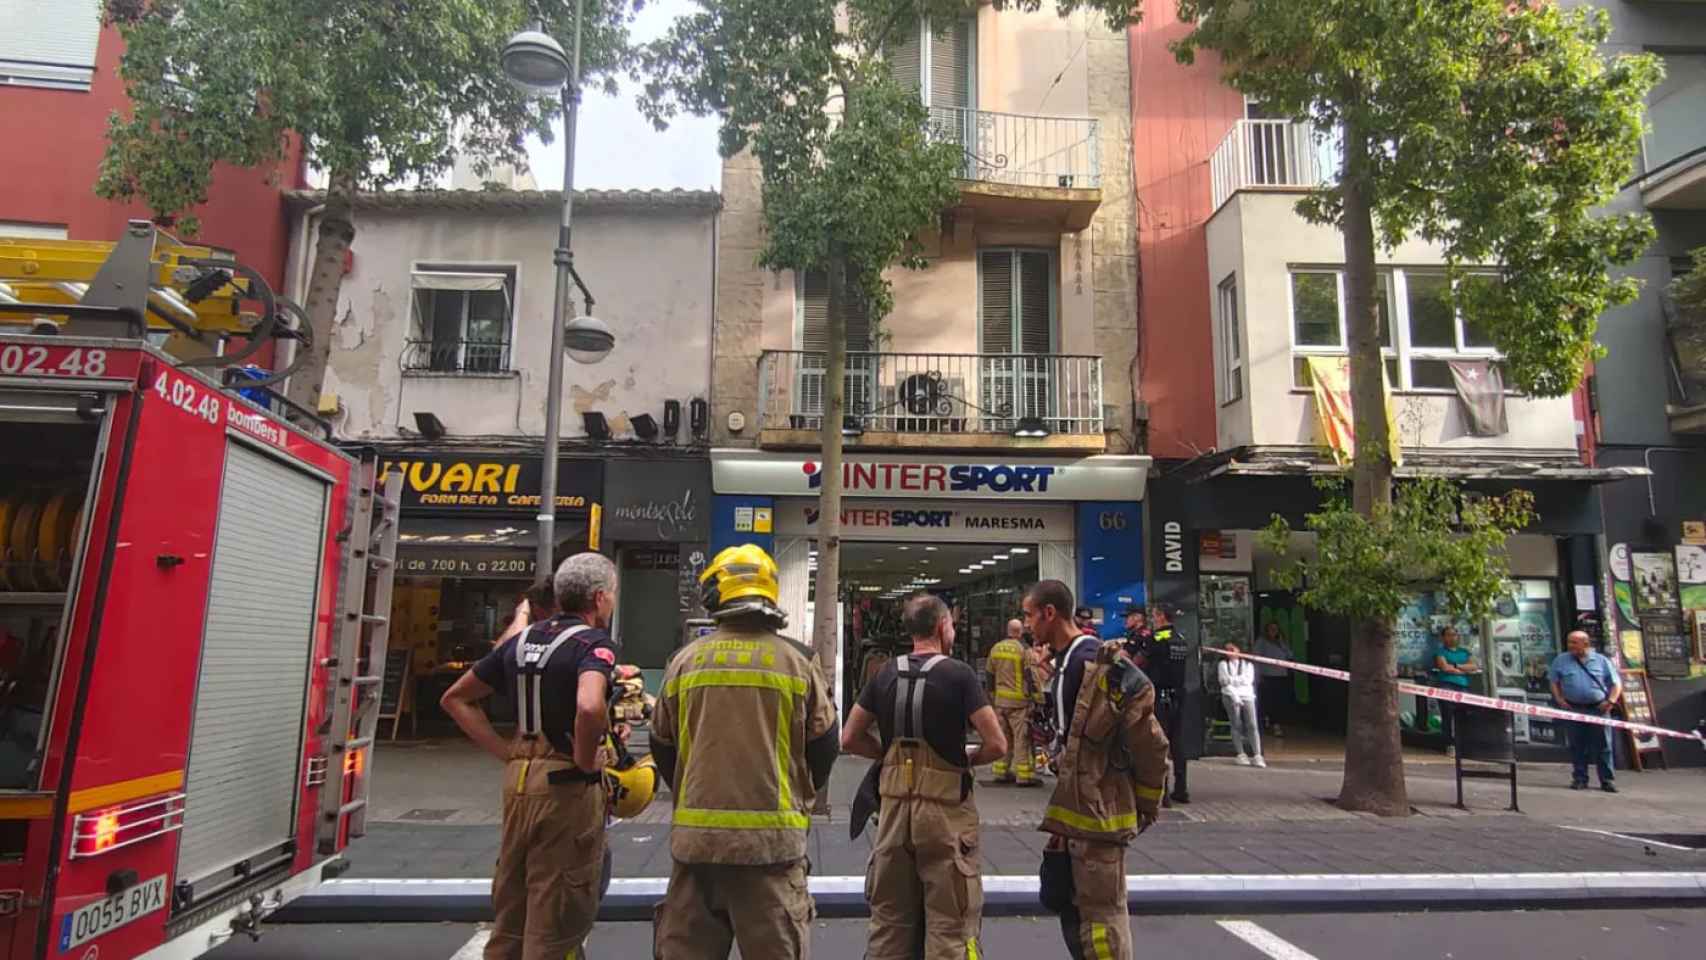 Los bombers de la Generalitat acuden a apagar un incendio en Badalona / BADALONA COMUNICACIÓ